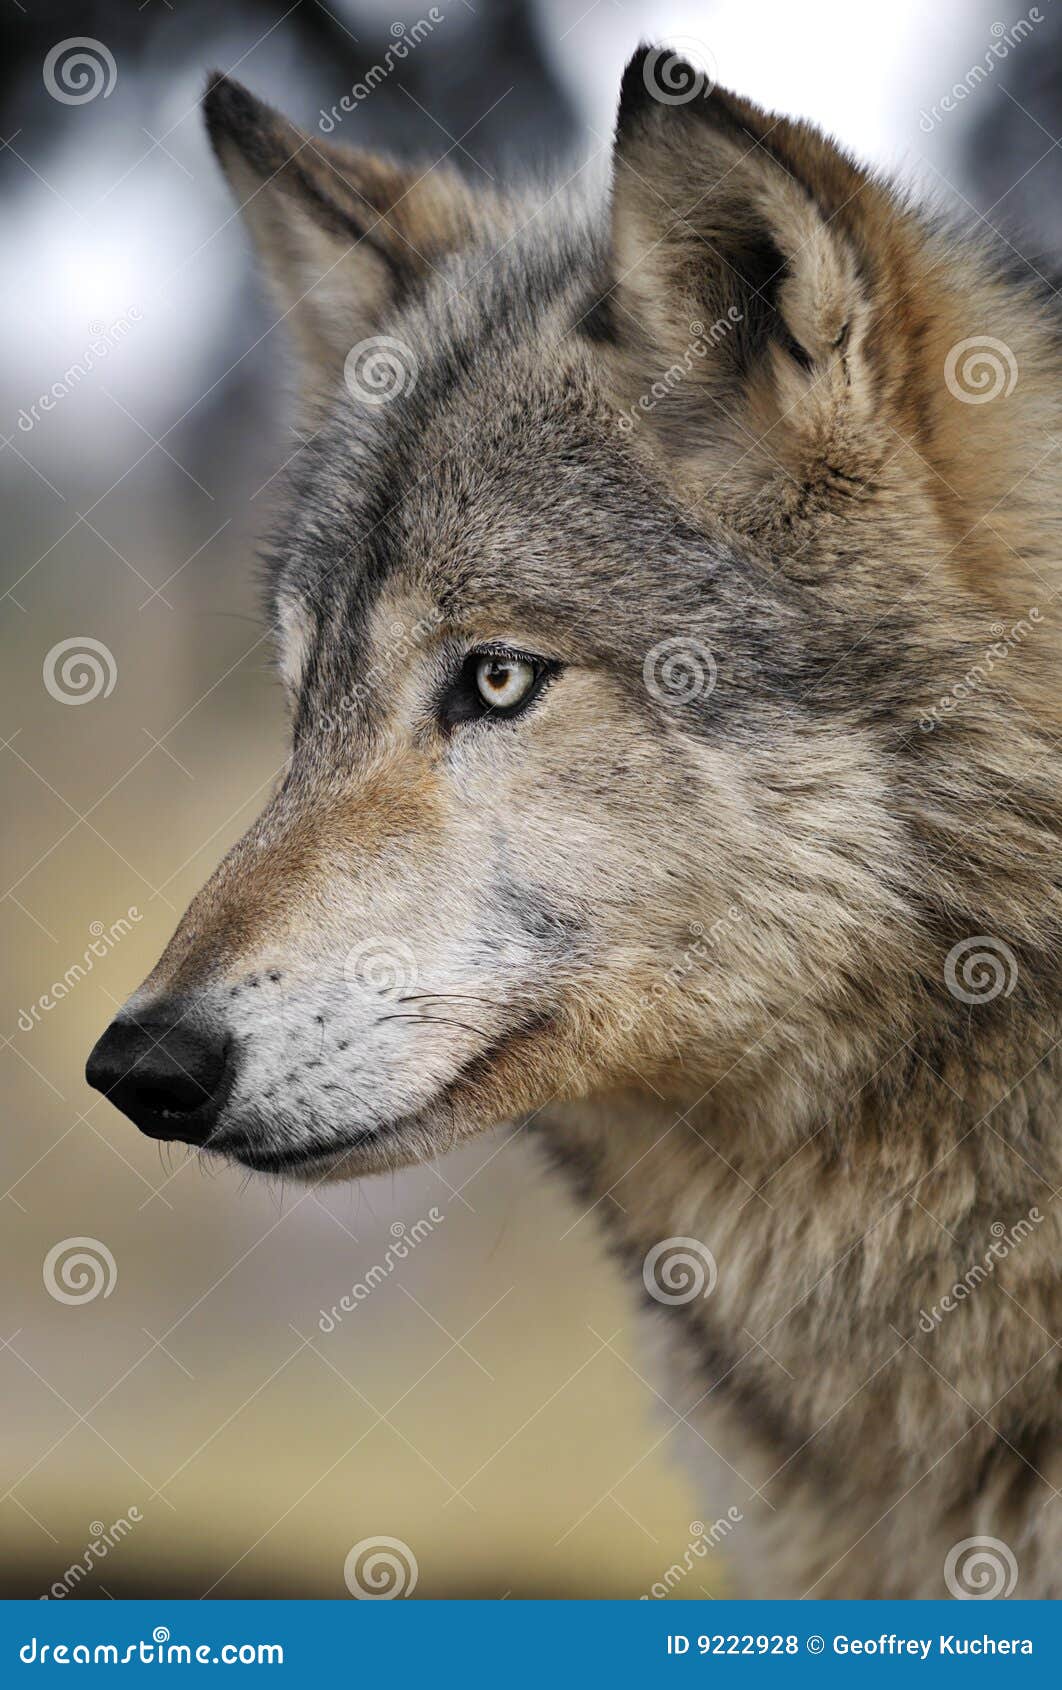 北美灰狼在狂放的天狼犬座 库存照片. 图片 包括有 木材, 森林, 野生生物, 犬属, 敌意, 灰色, 食肉动物 - 131323112